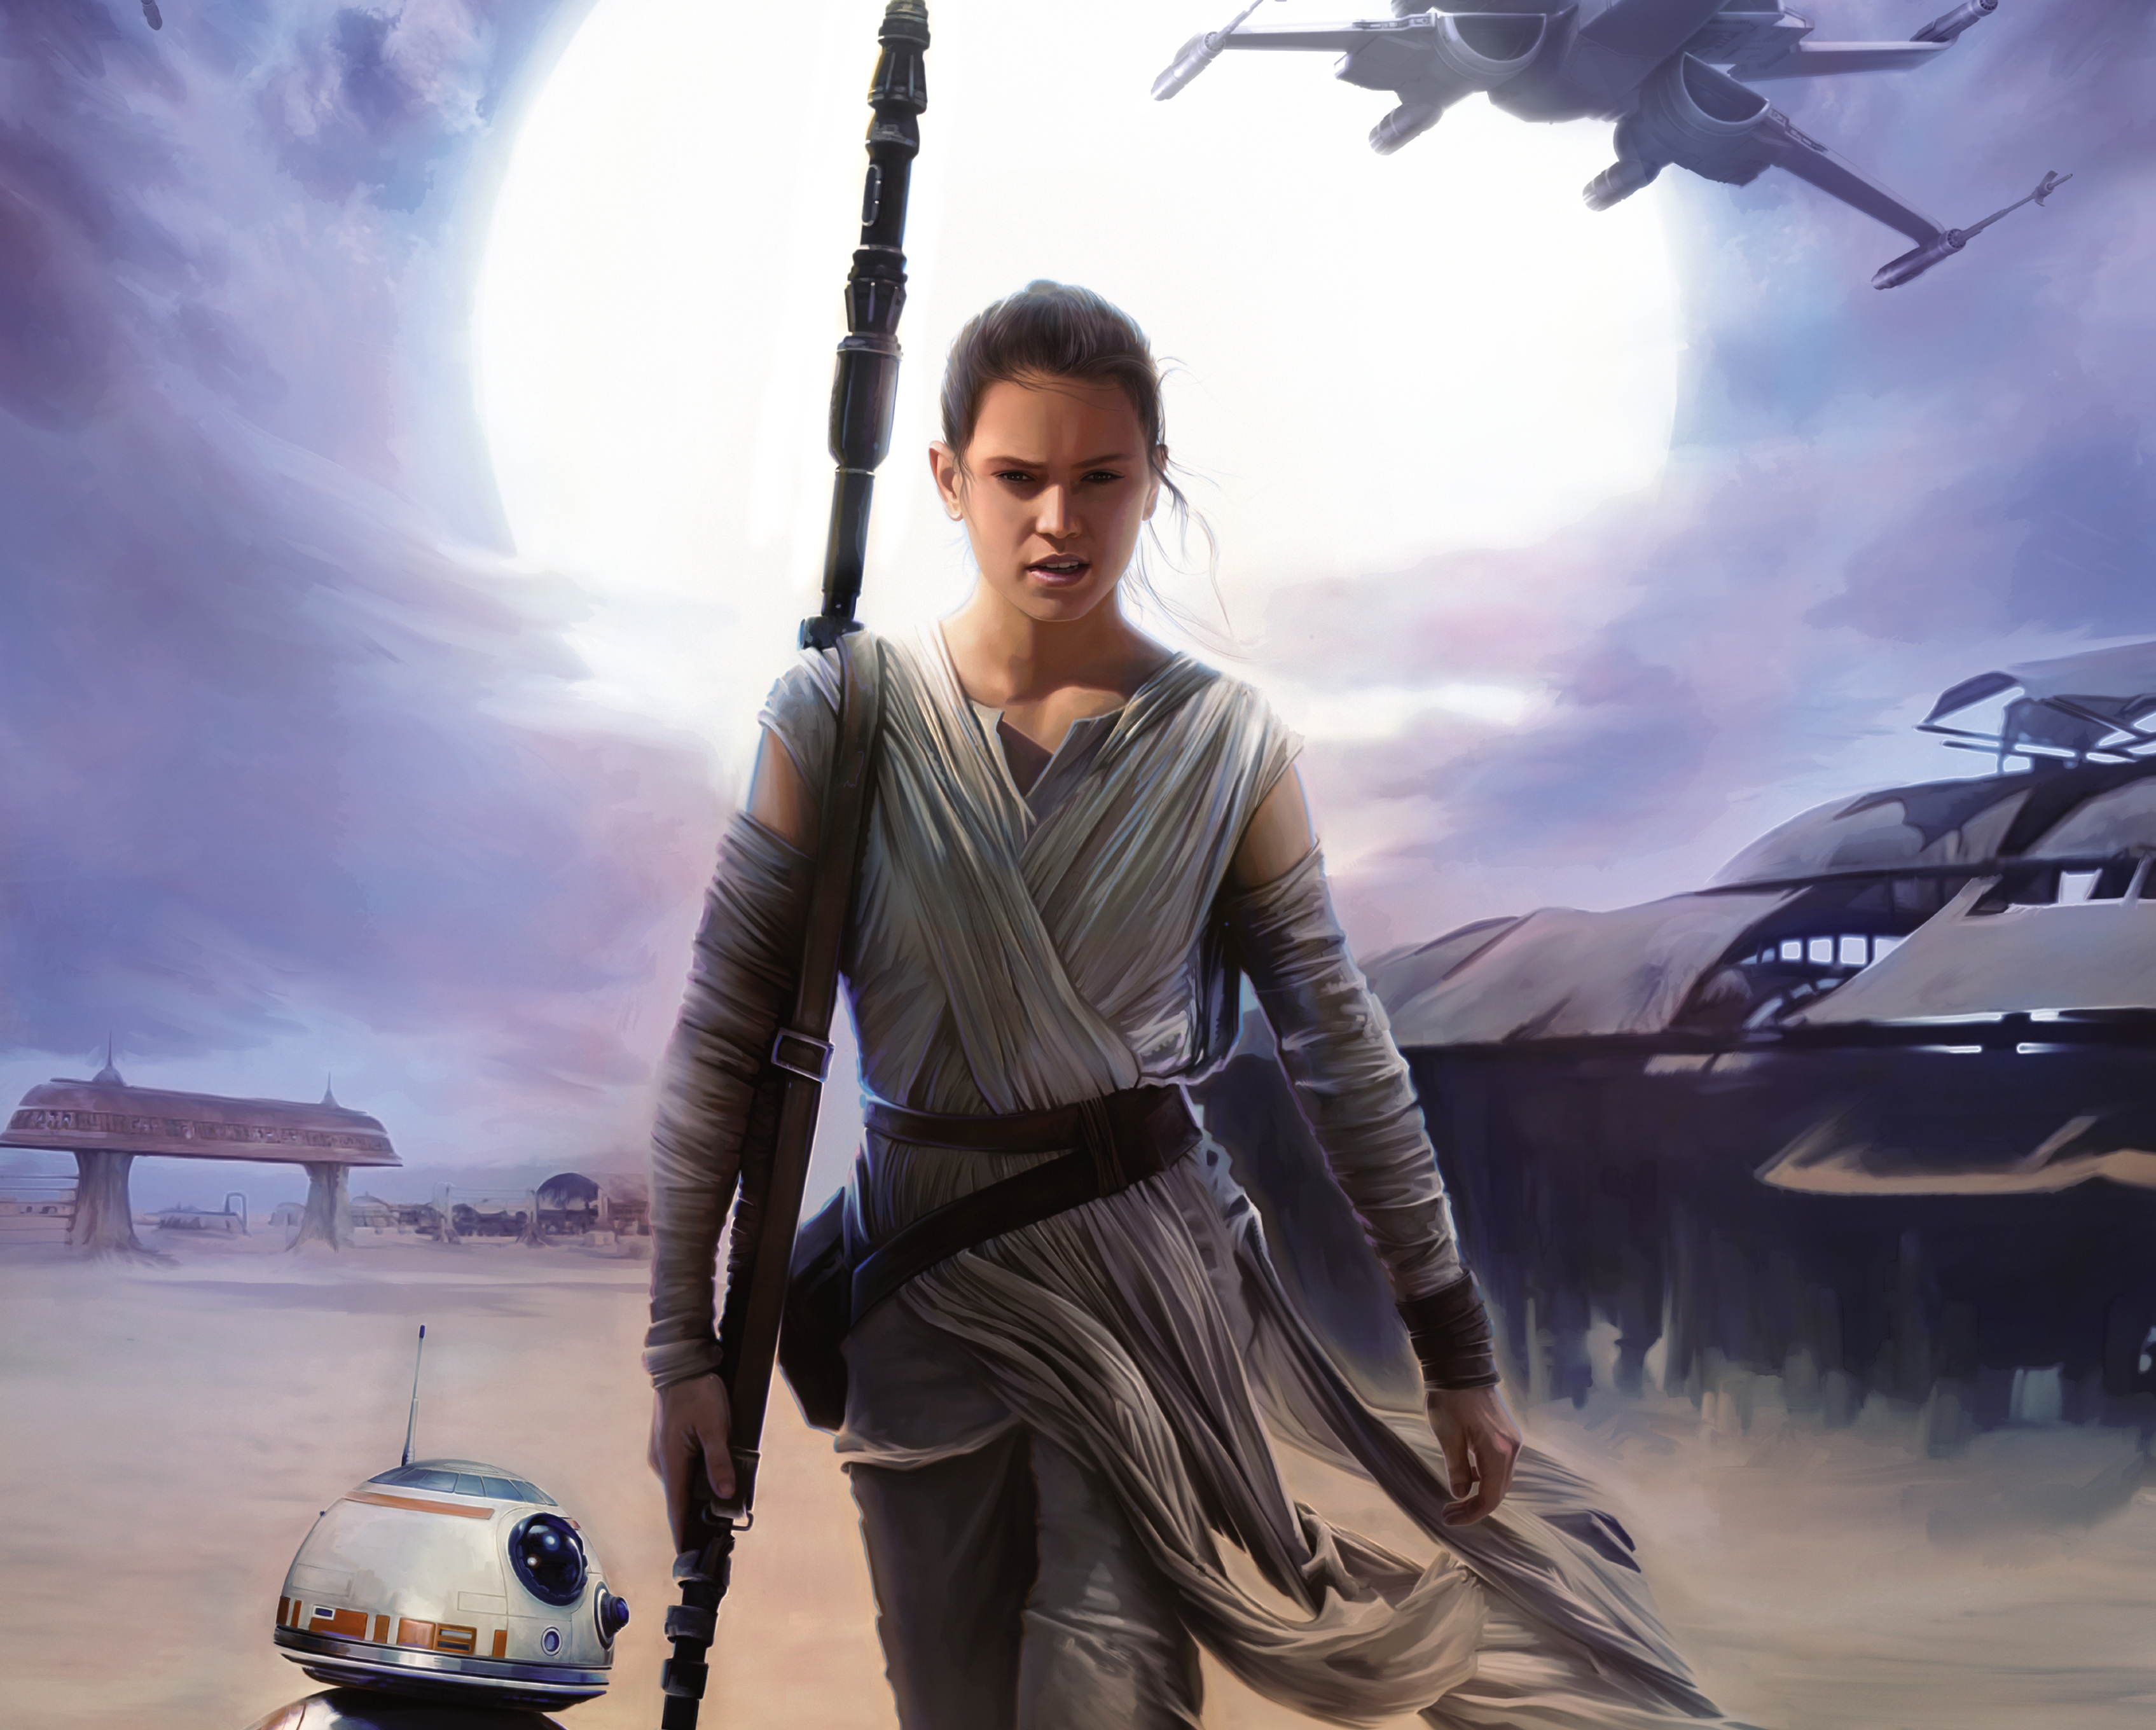 Popular Rey (Star Wars) Phone background